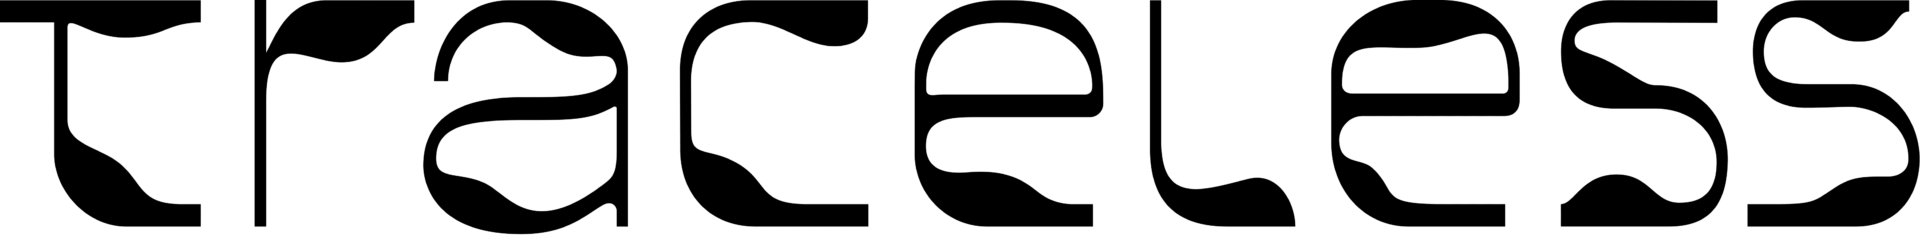 Traceless Logo